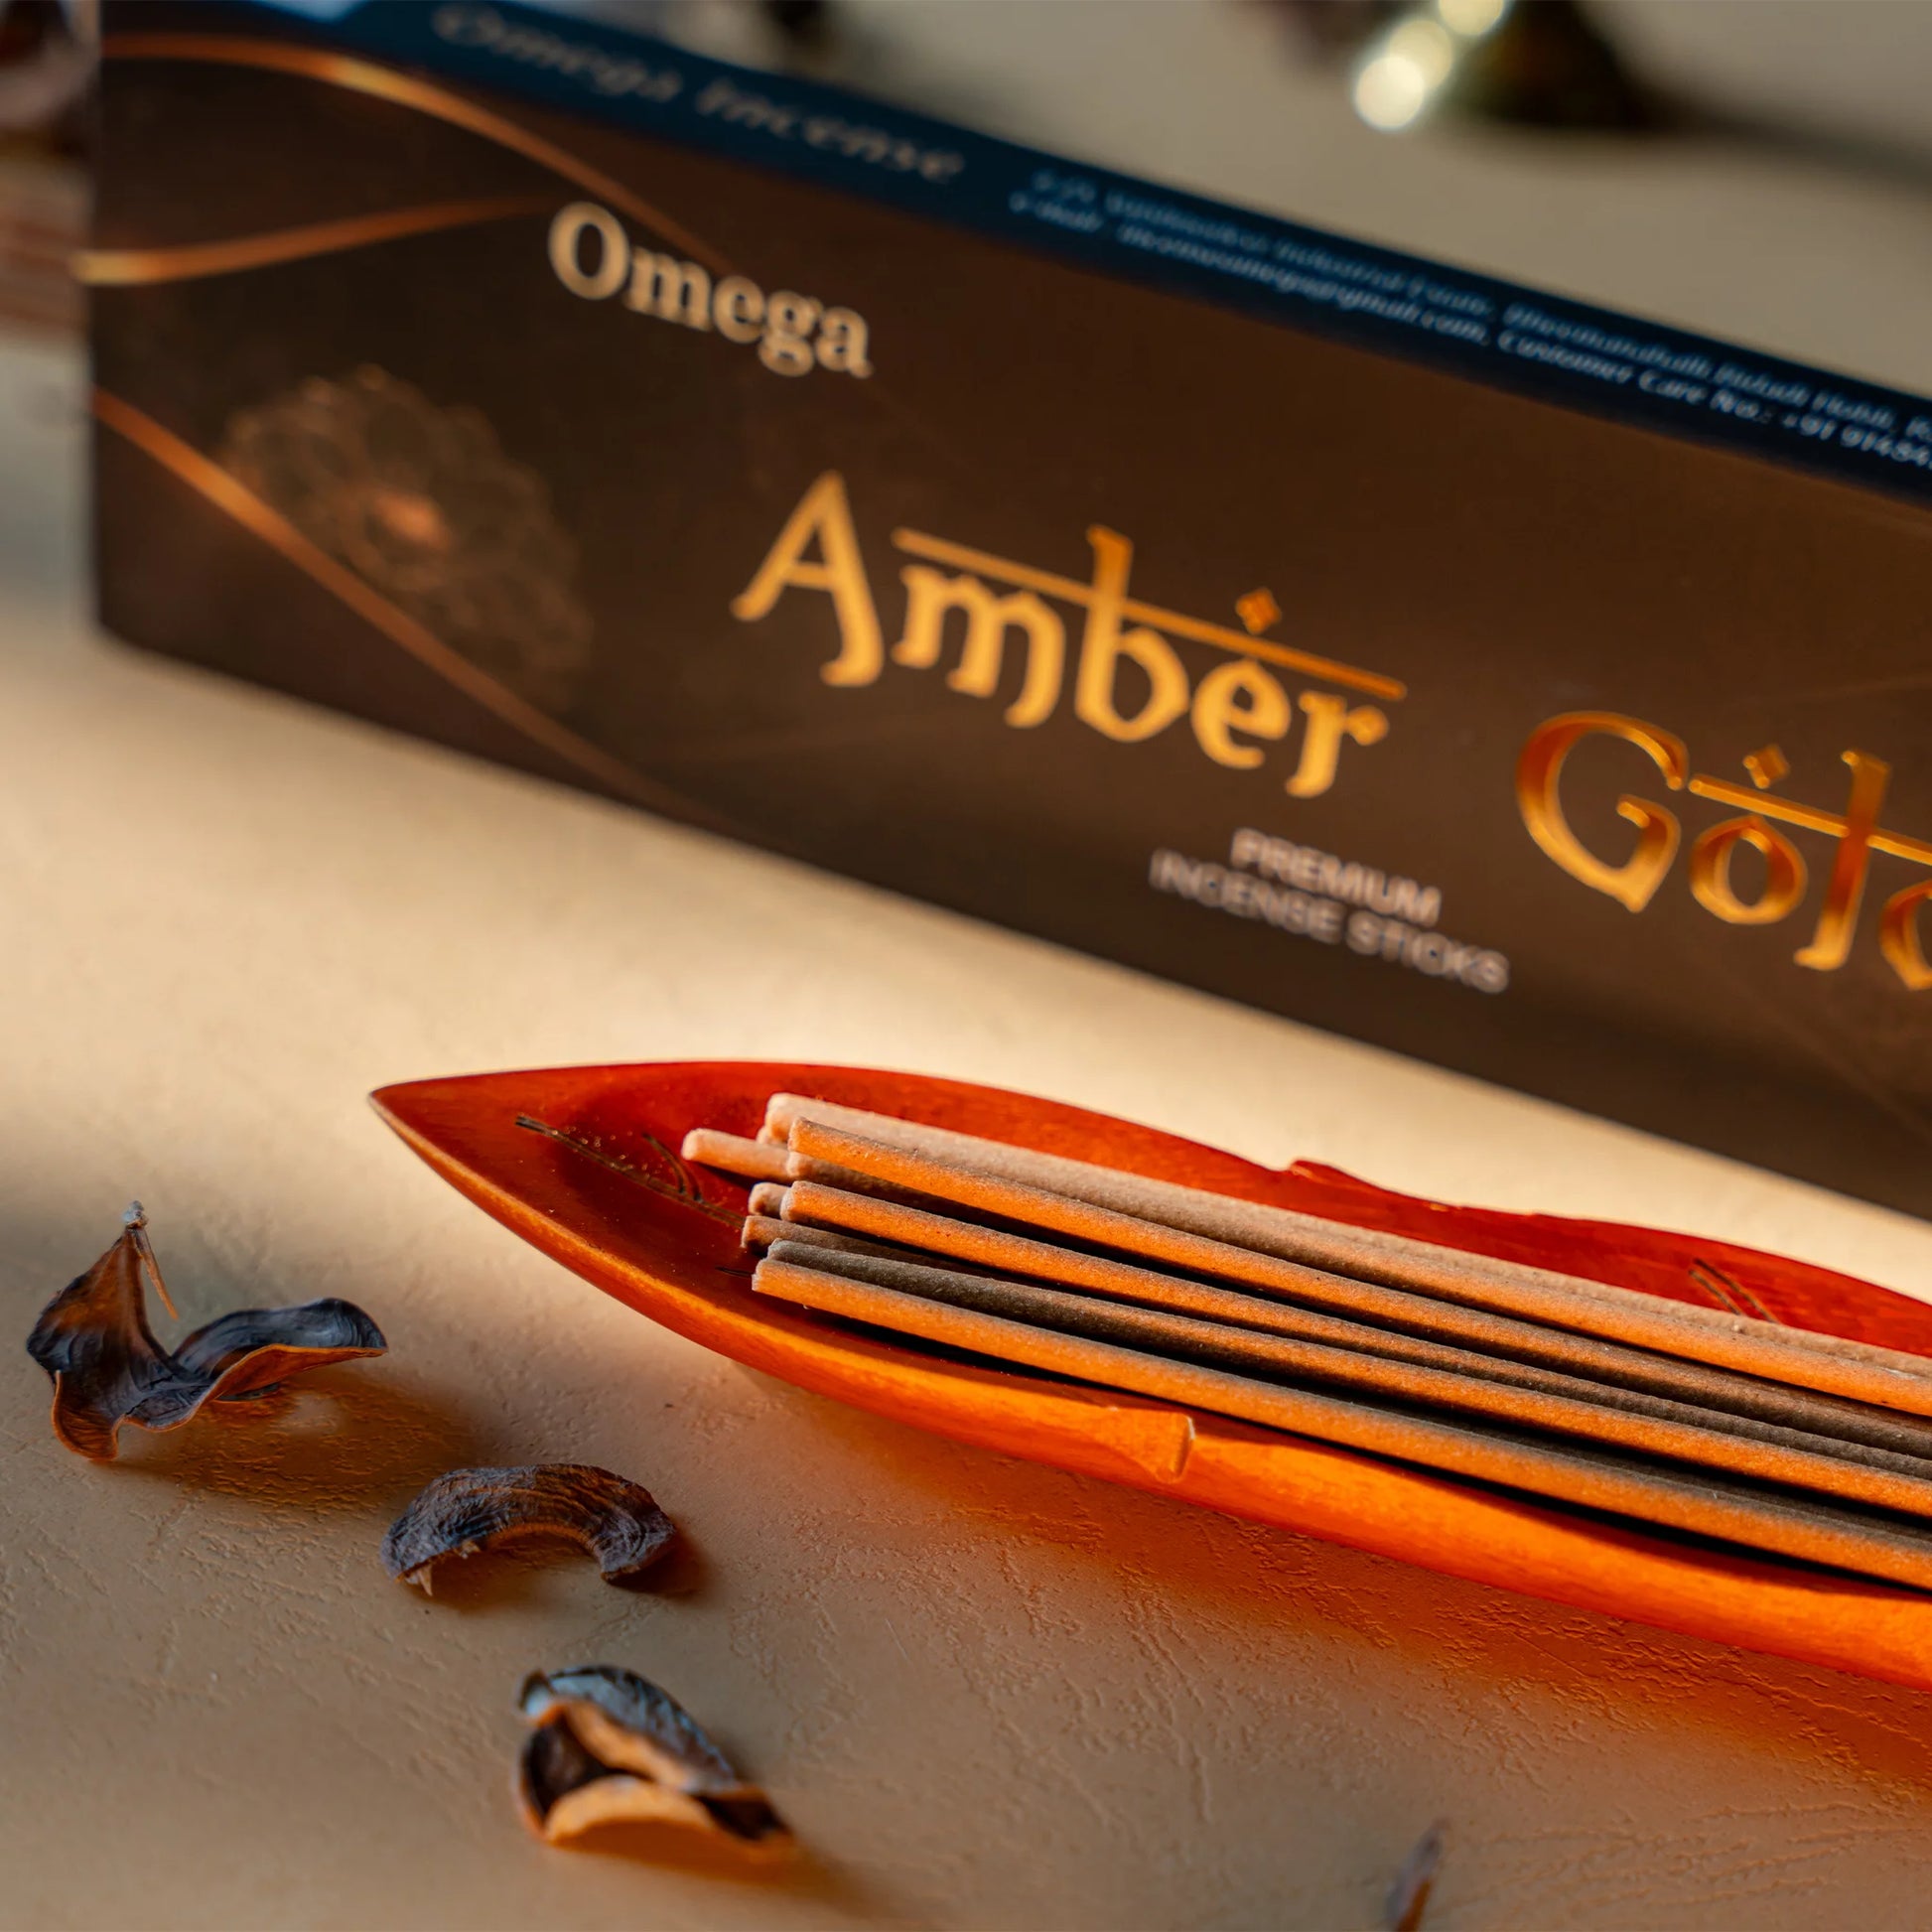 amber-gold-premium-incense-sticks